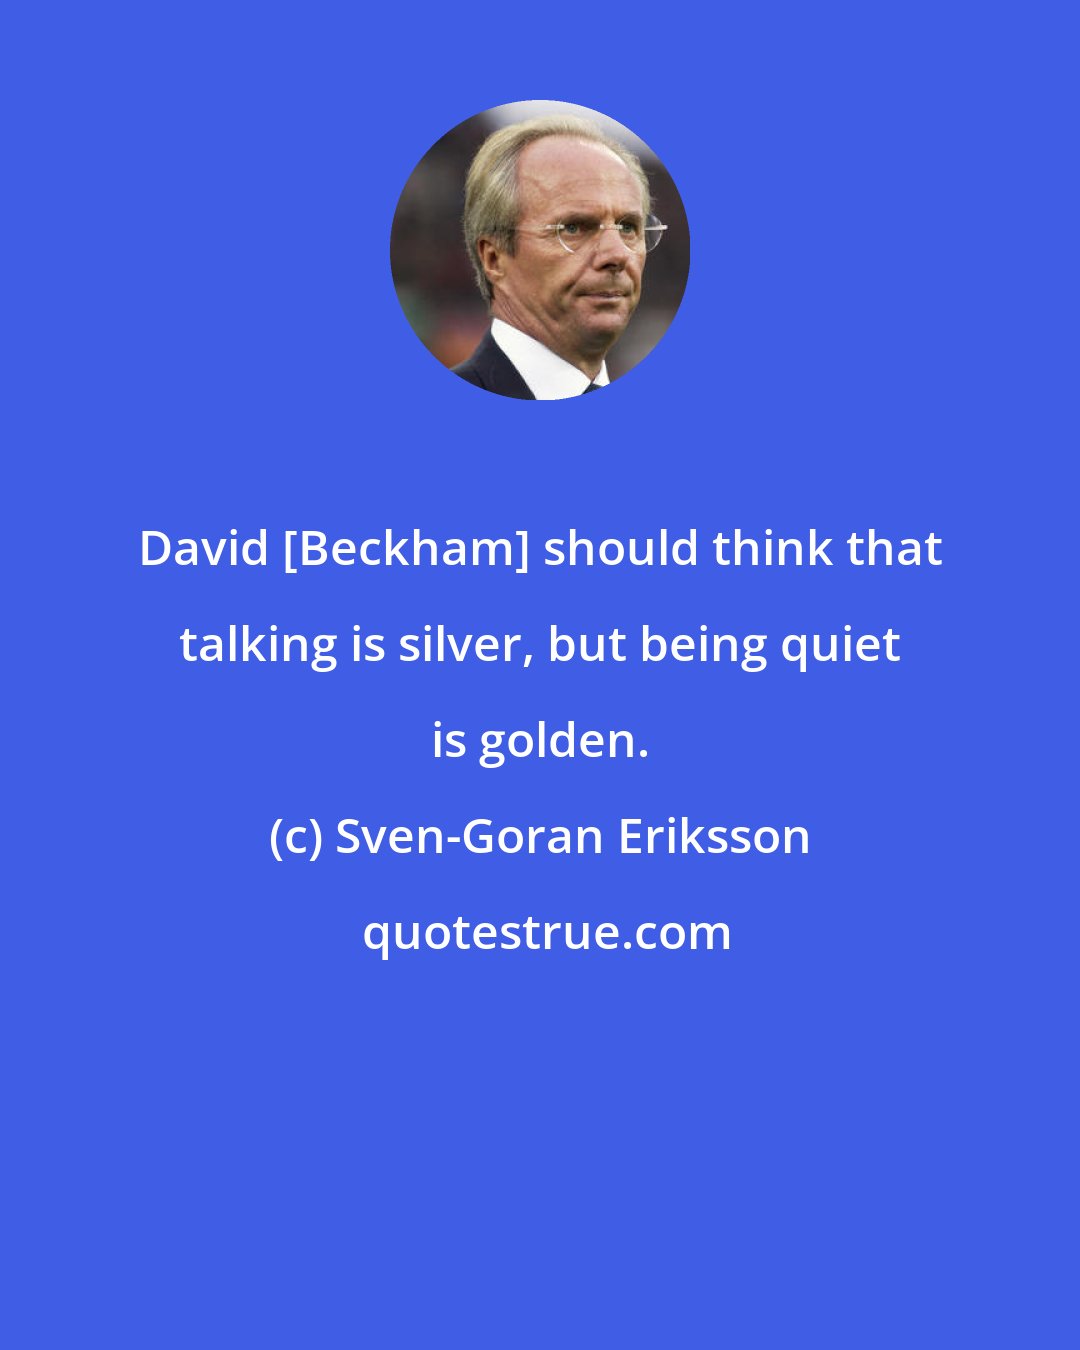 Sven-Goran Eriksson: David [Beckham] should think that talking is silver, but being quiet is golden.